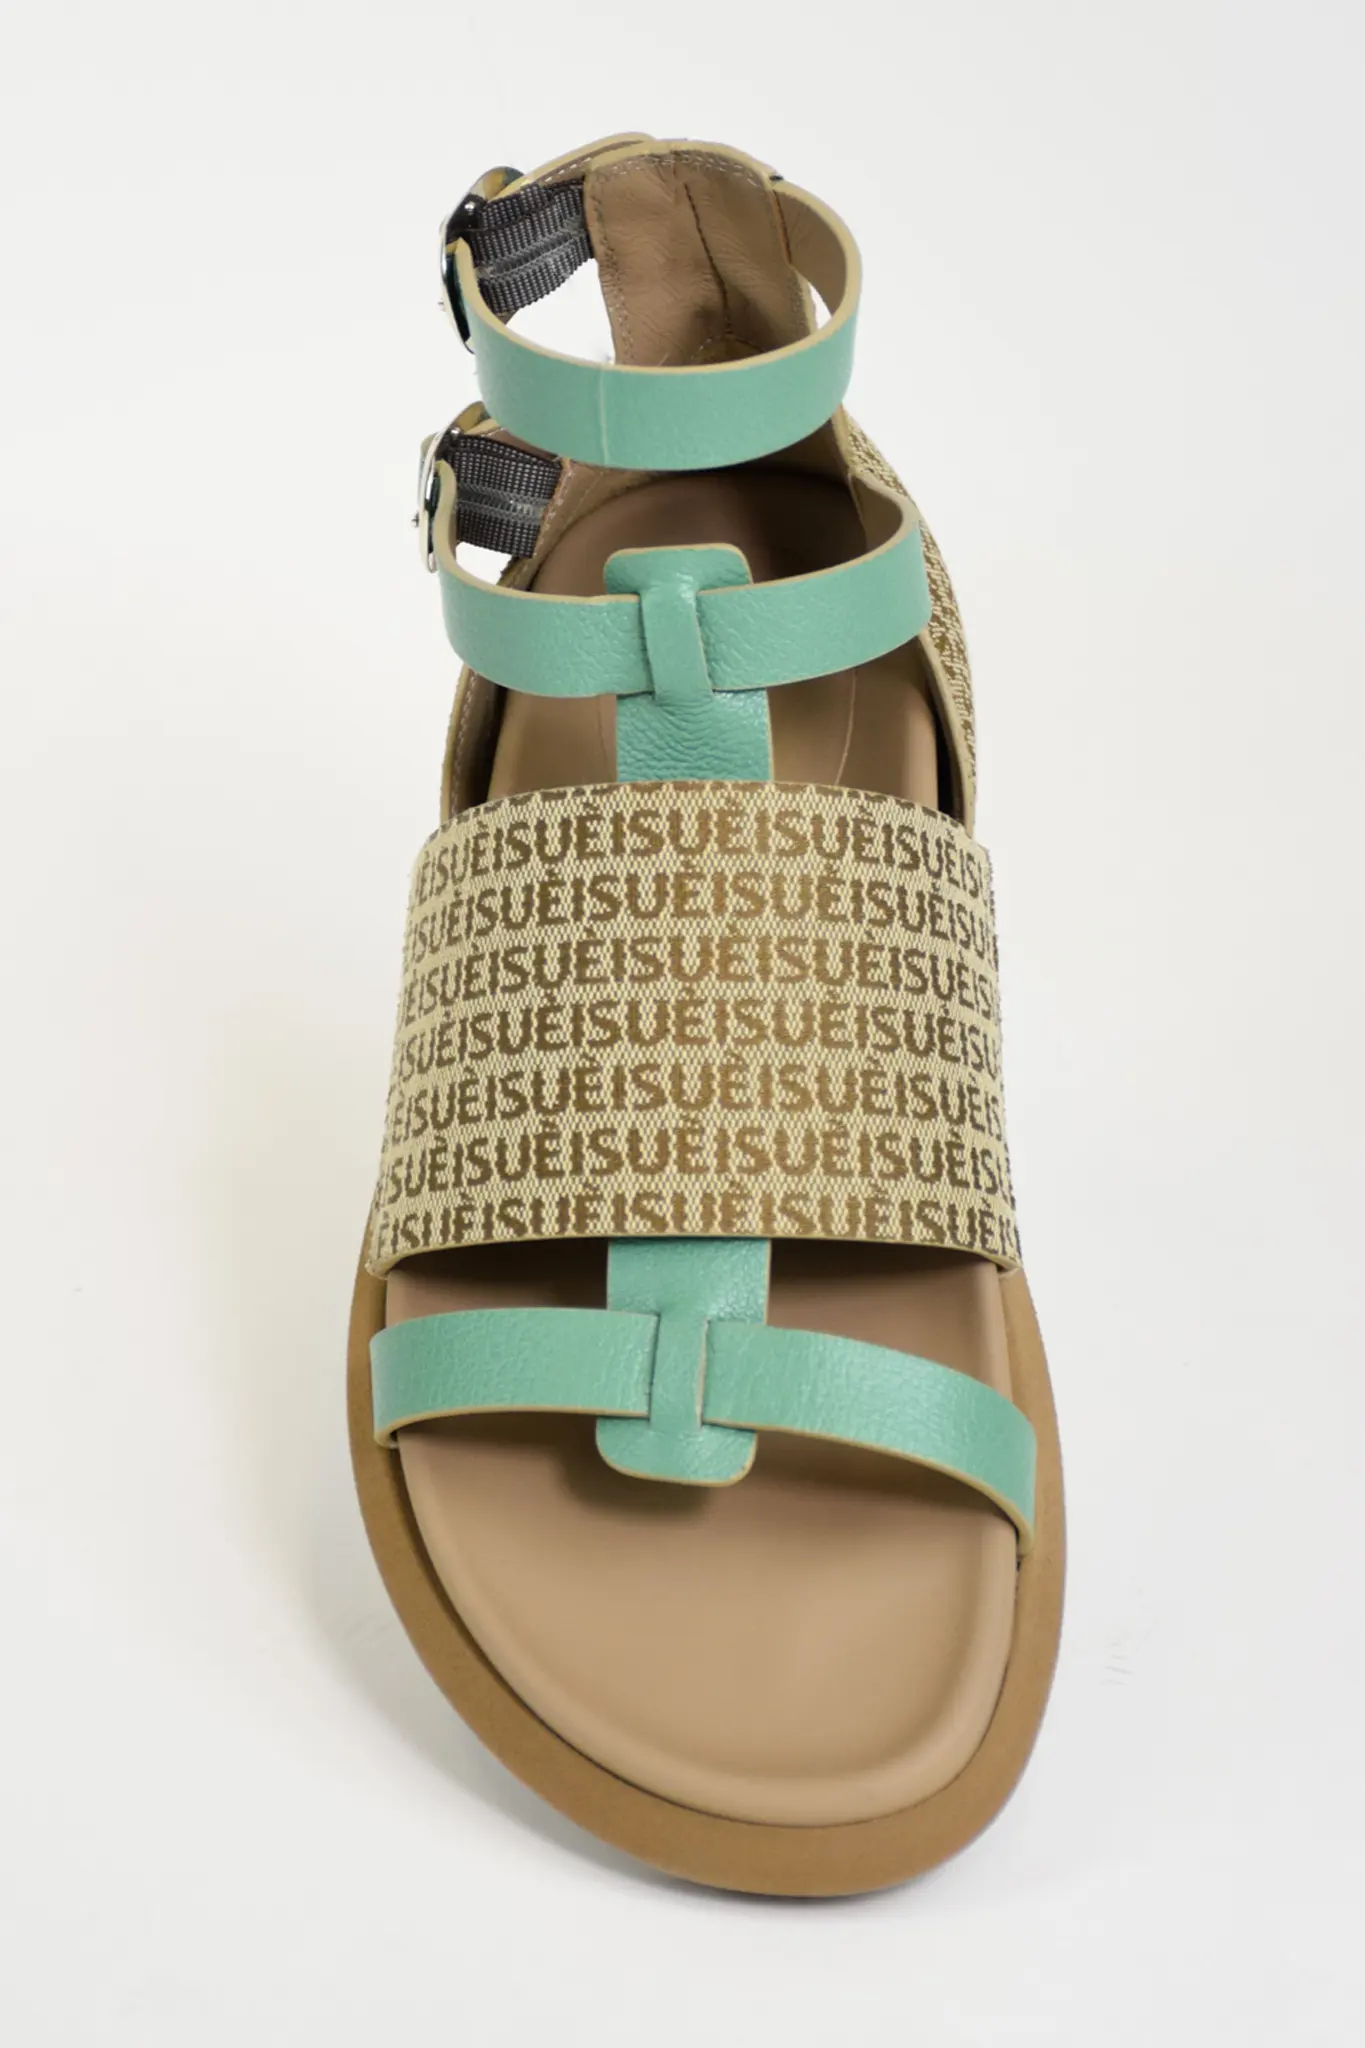 Sandalias planas de algodón Jacquard hechas en Italia, zapatos de Color marrón con monograma, estilo informal, para verano